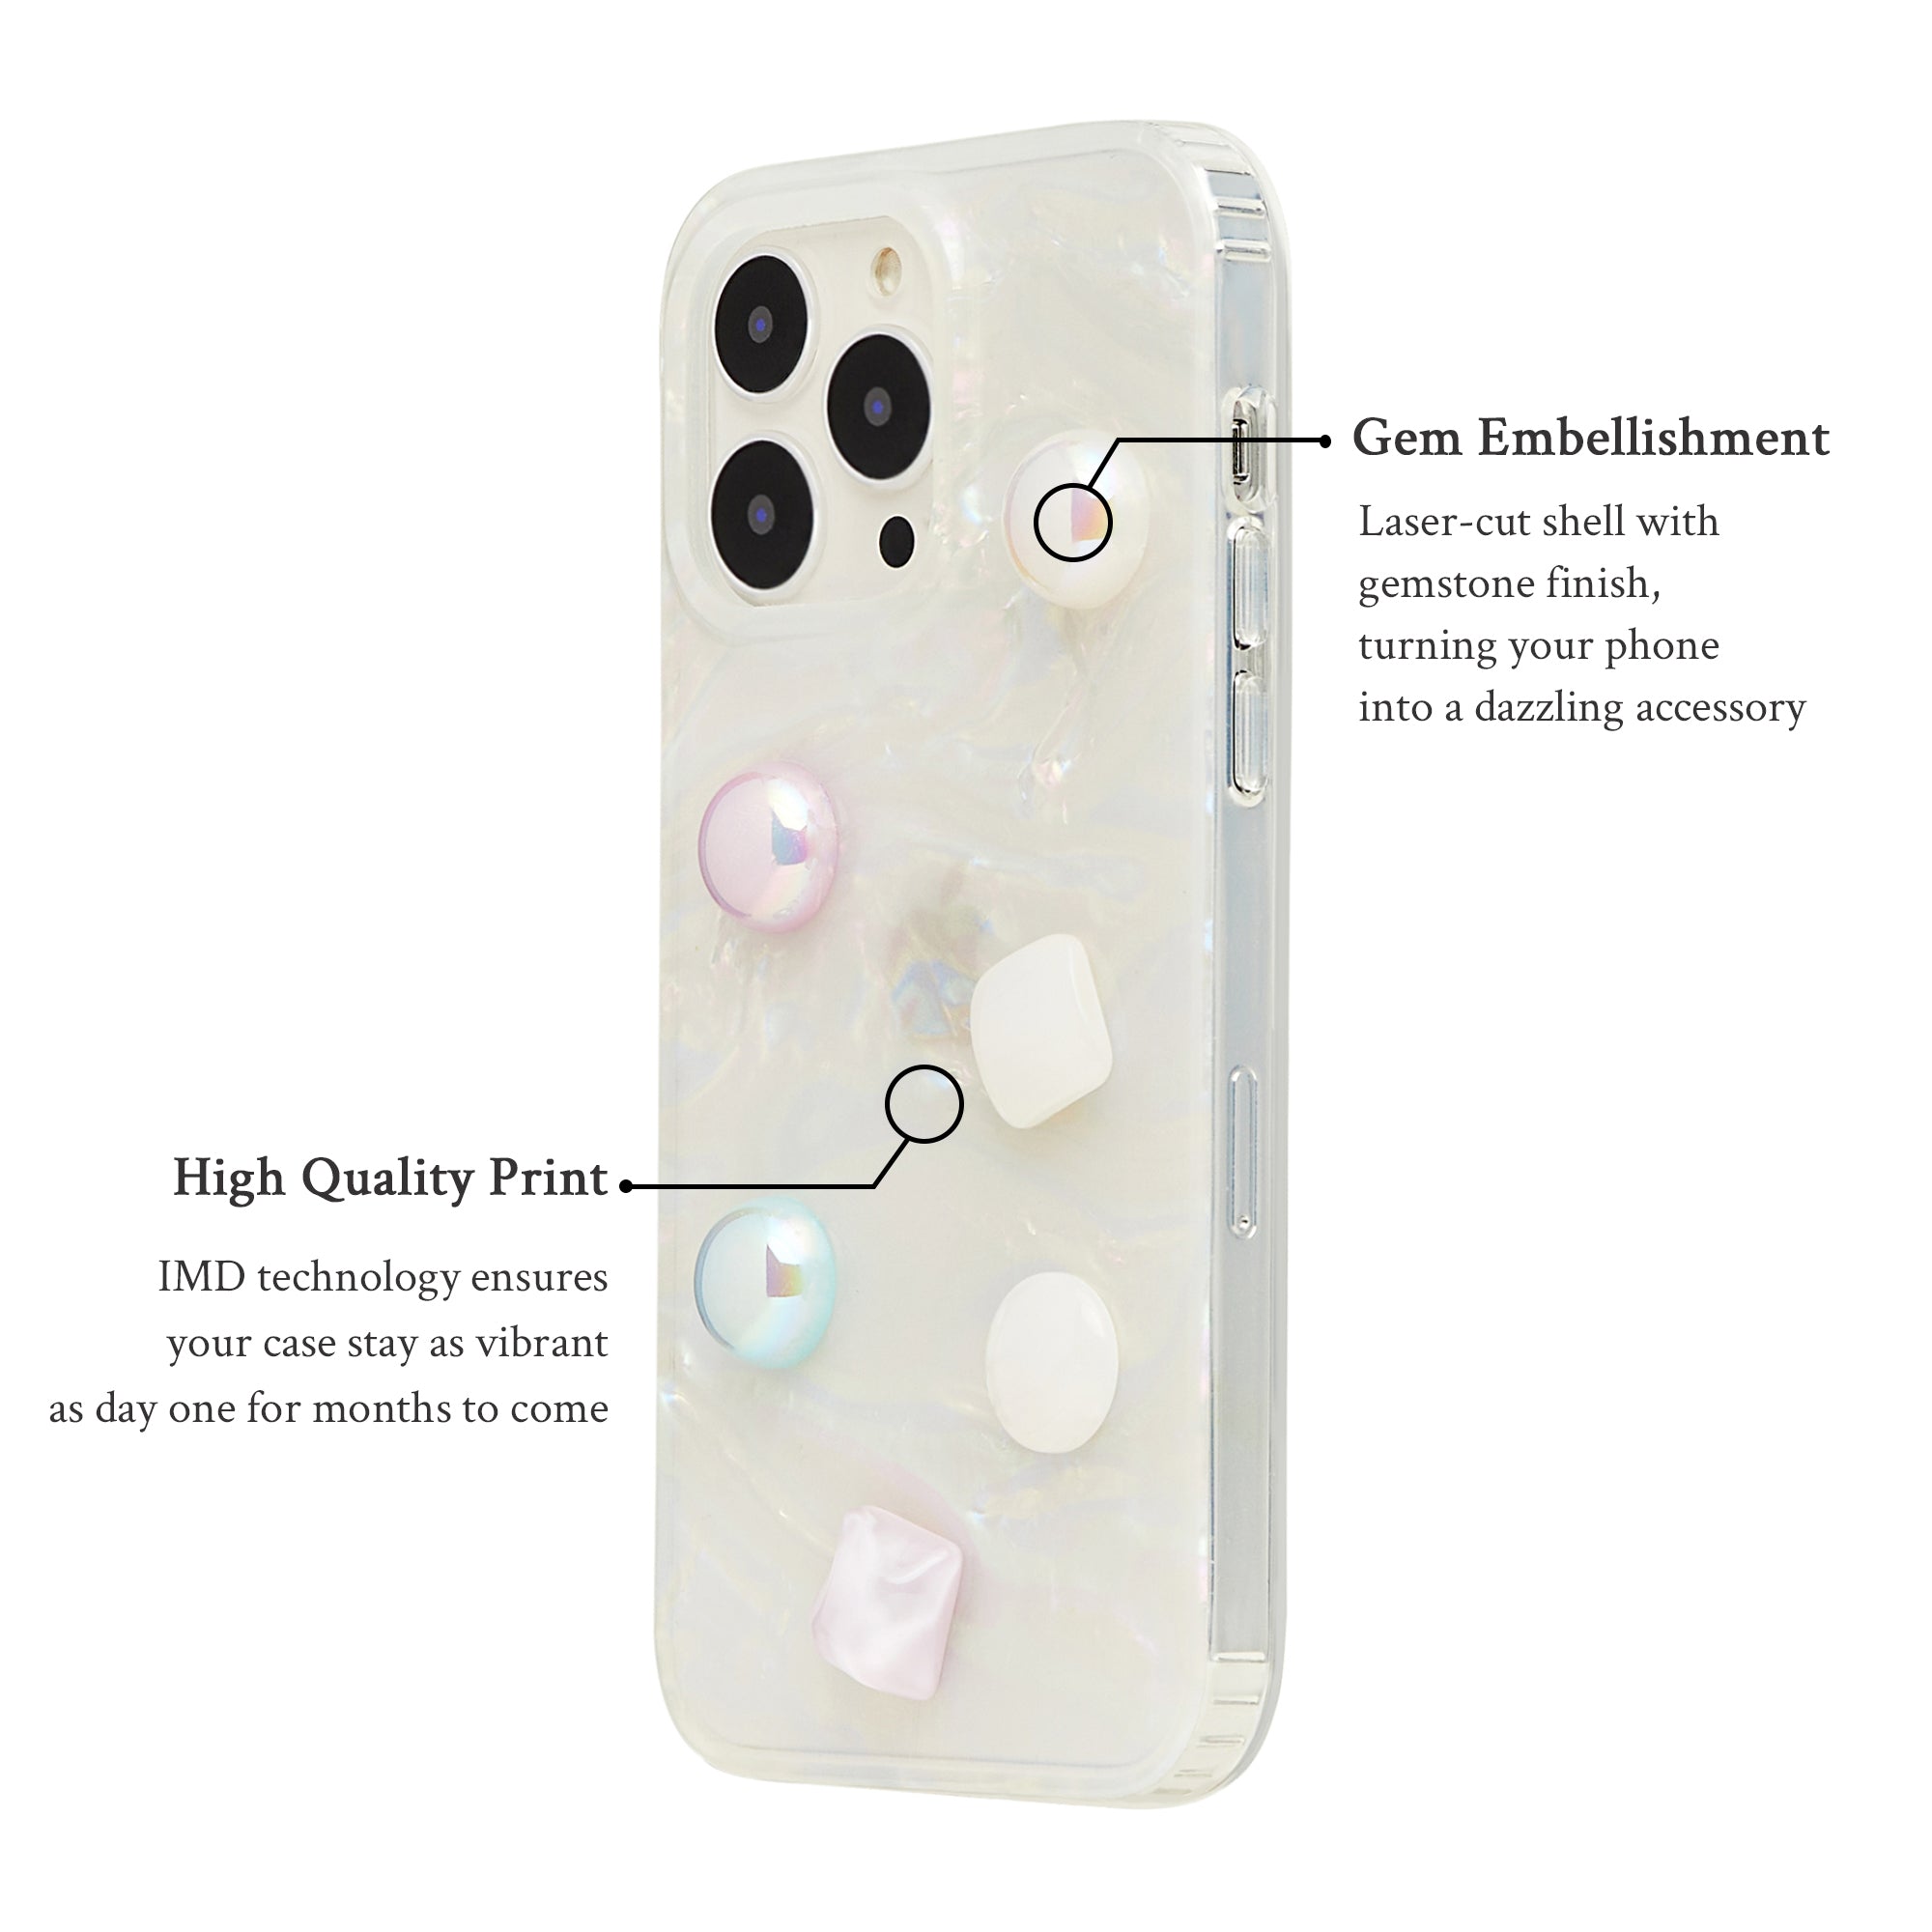 Gem Embellished Oceanic Phone Case